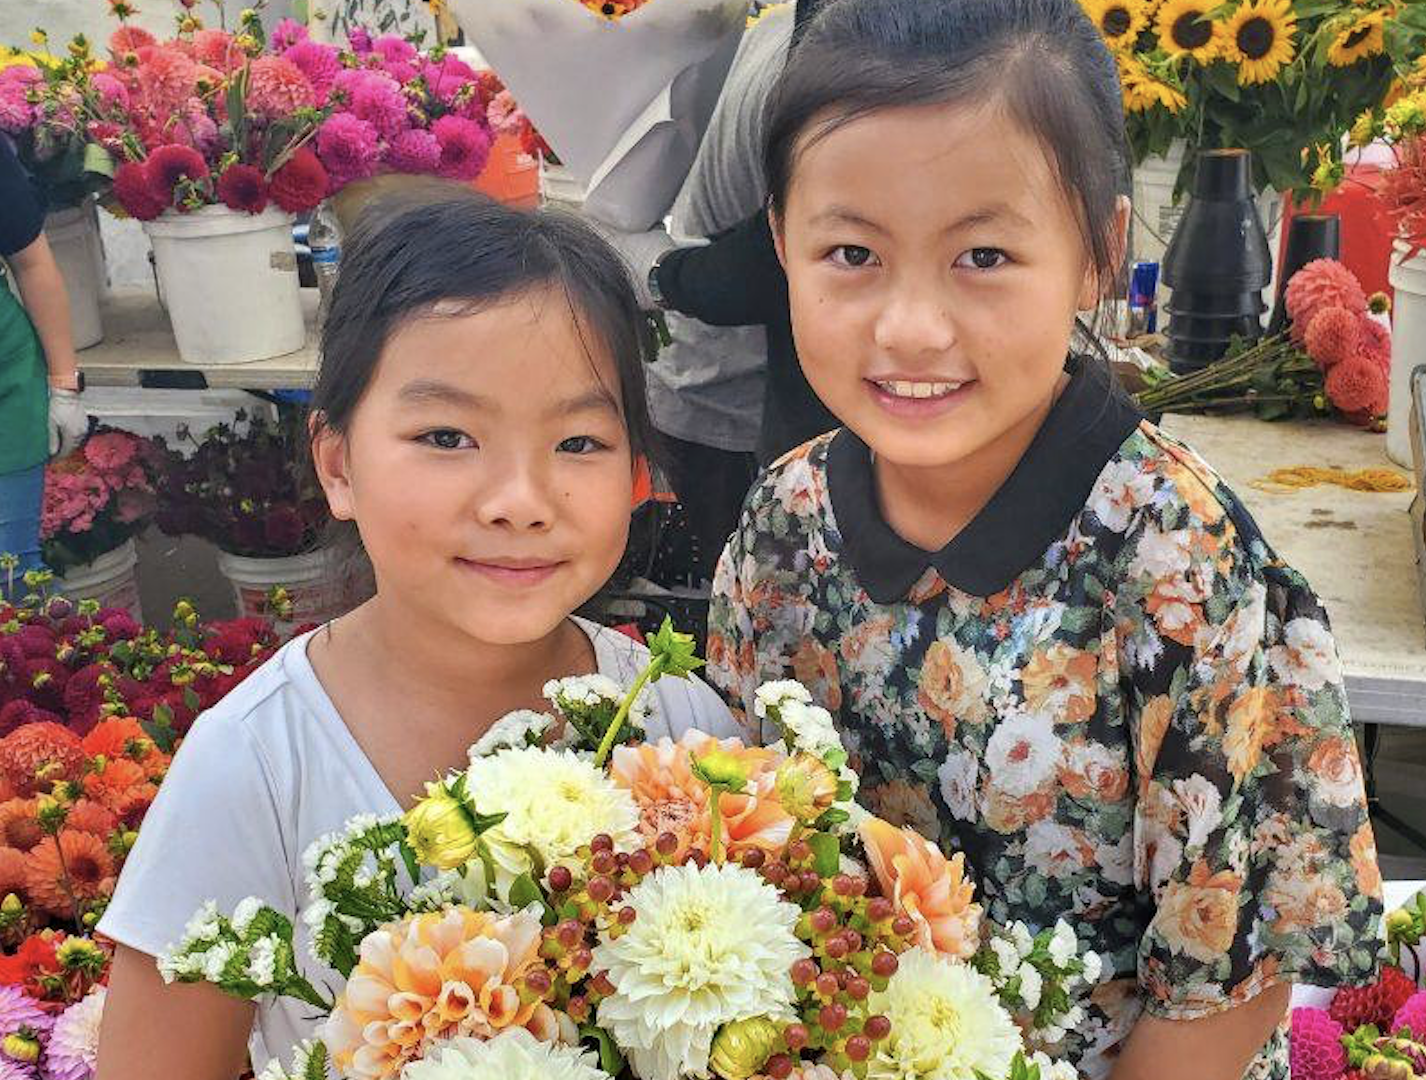 Buy A Bouquet And Support Ballard Farmers Market Flower Vendors My Ballard